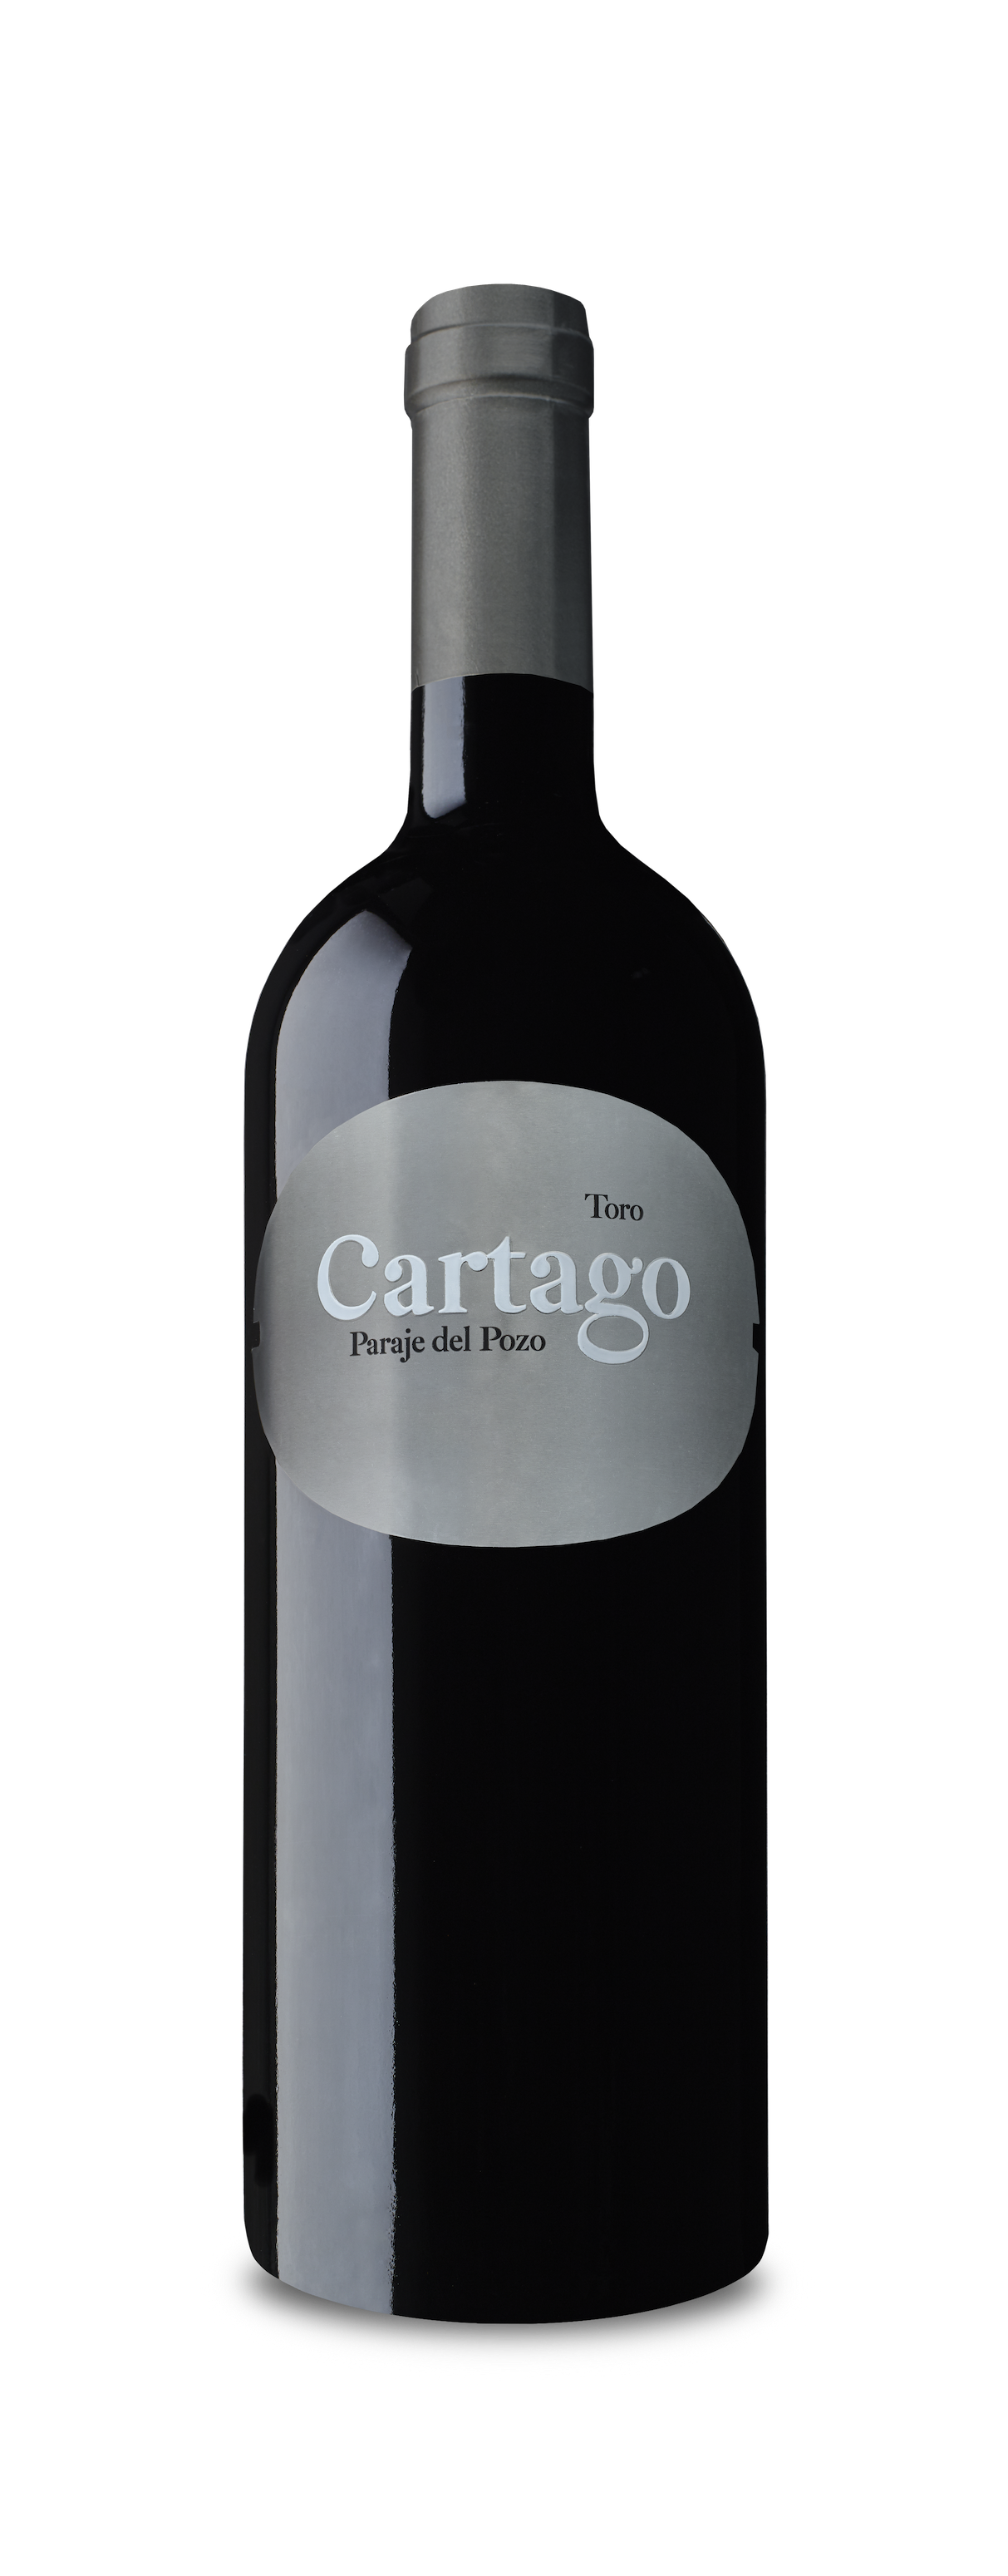 Wine Vins Bodegas San Roman Cartago Tinto